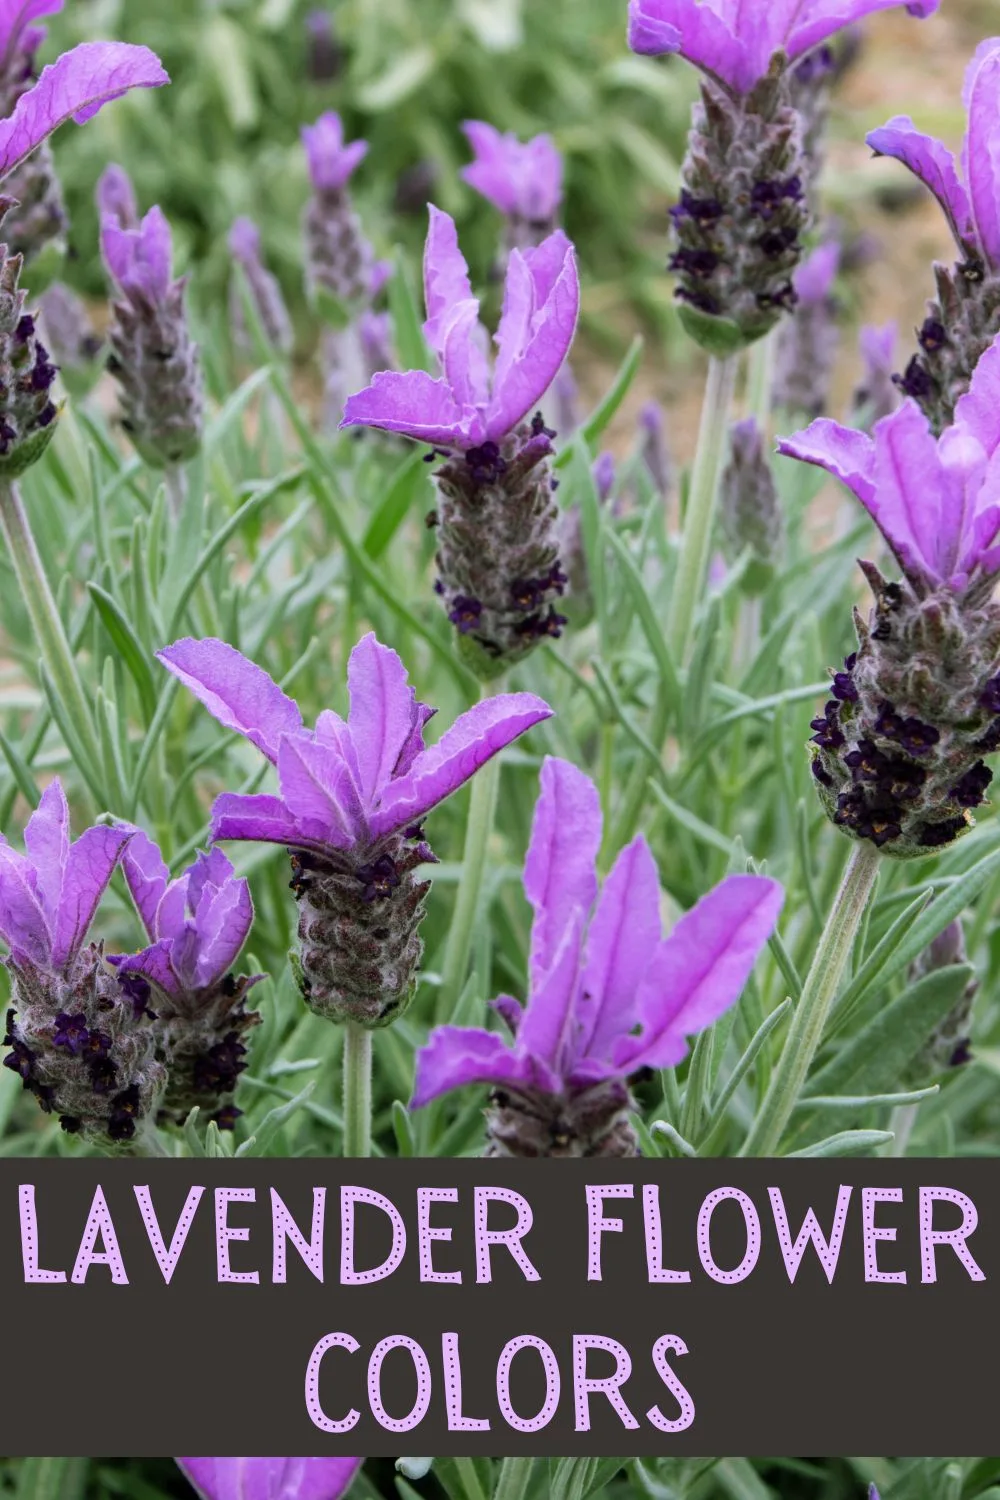 Lavender flower colors.